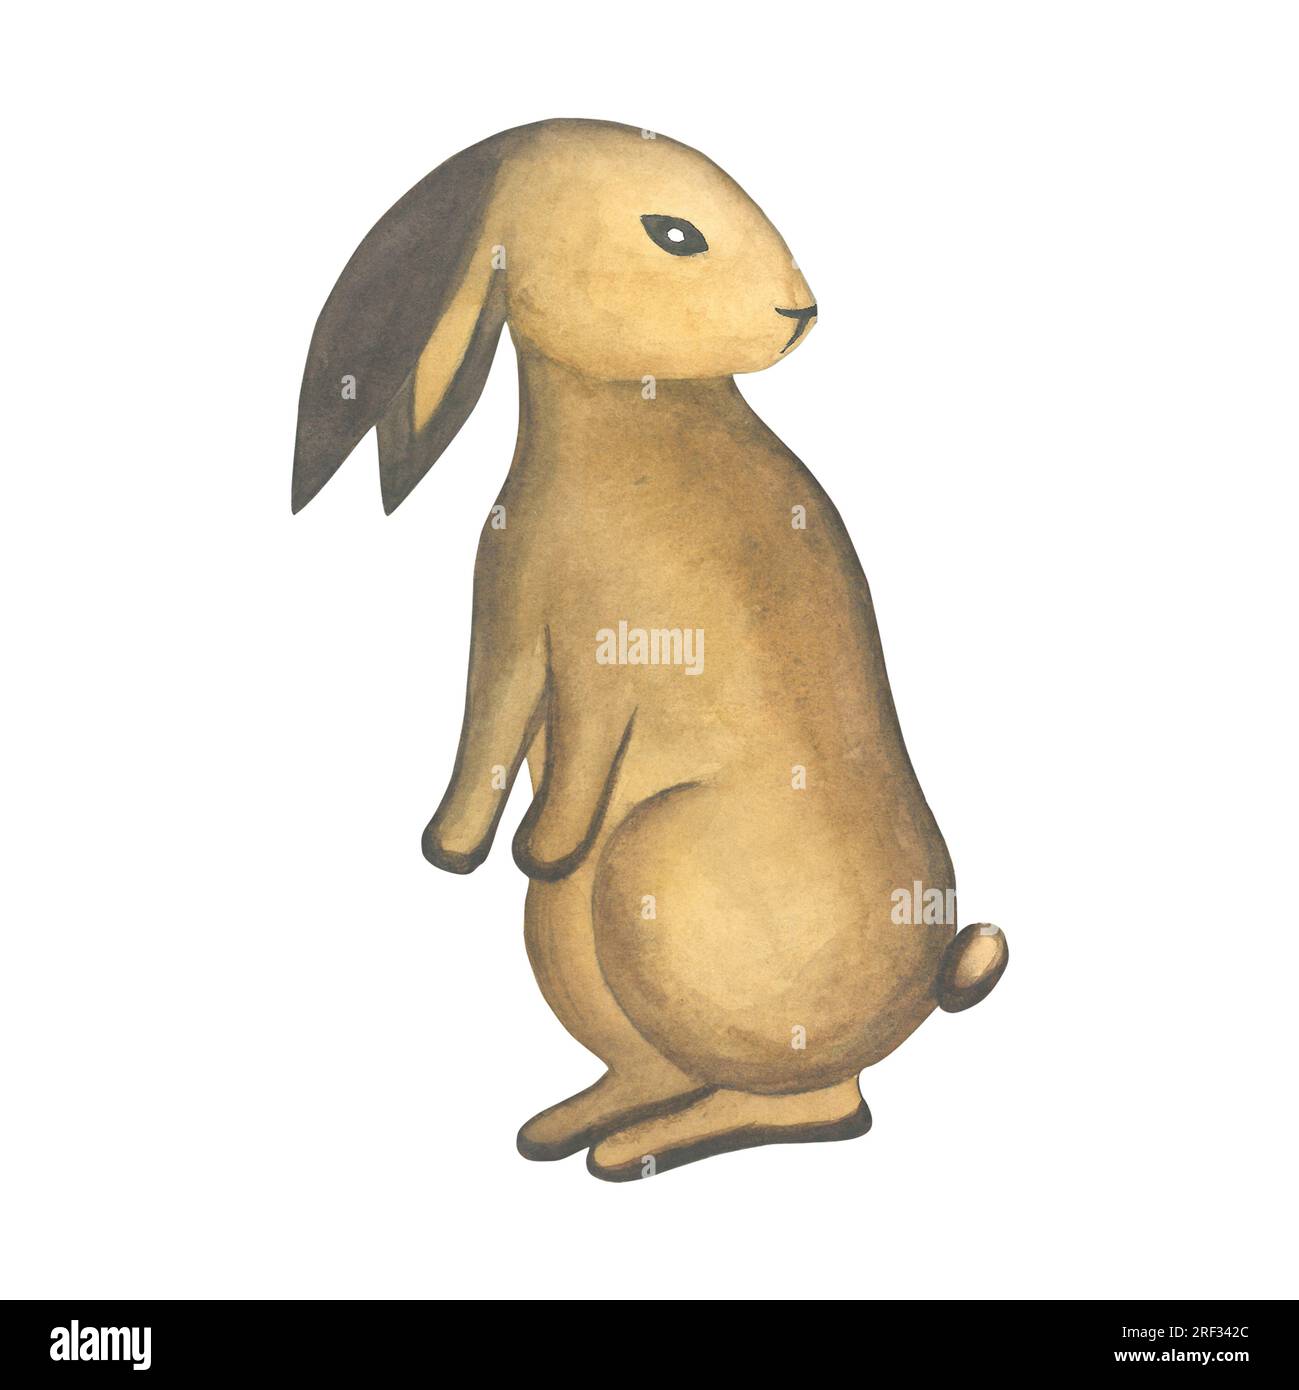 Illustrazione ad acquerello di un coniglio con orecchie all'indietro in stile medievale. Realizzato a mano isolato su sfondo bianco Foto Stock